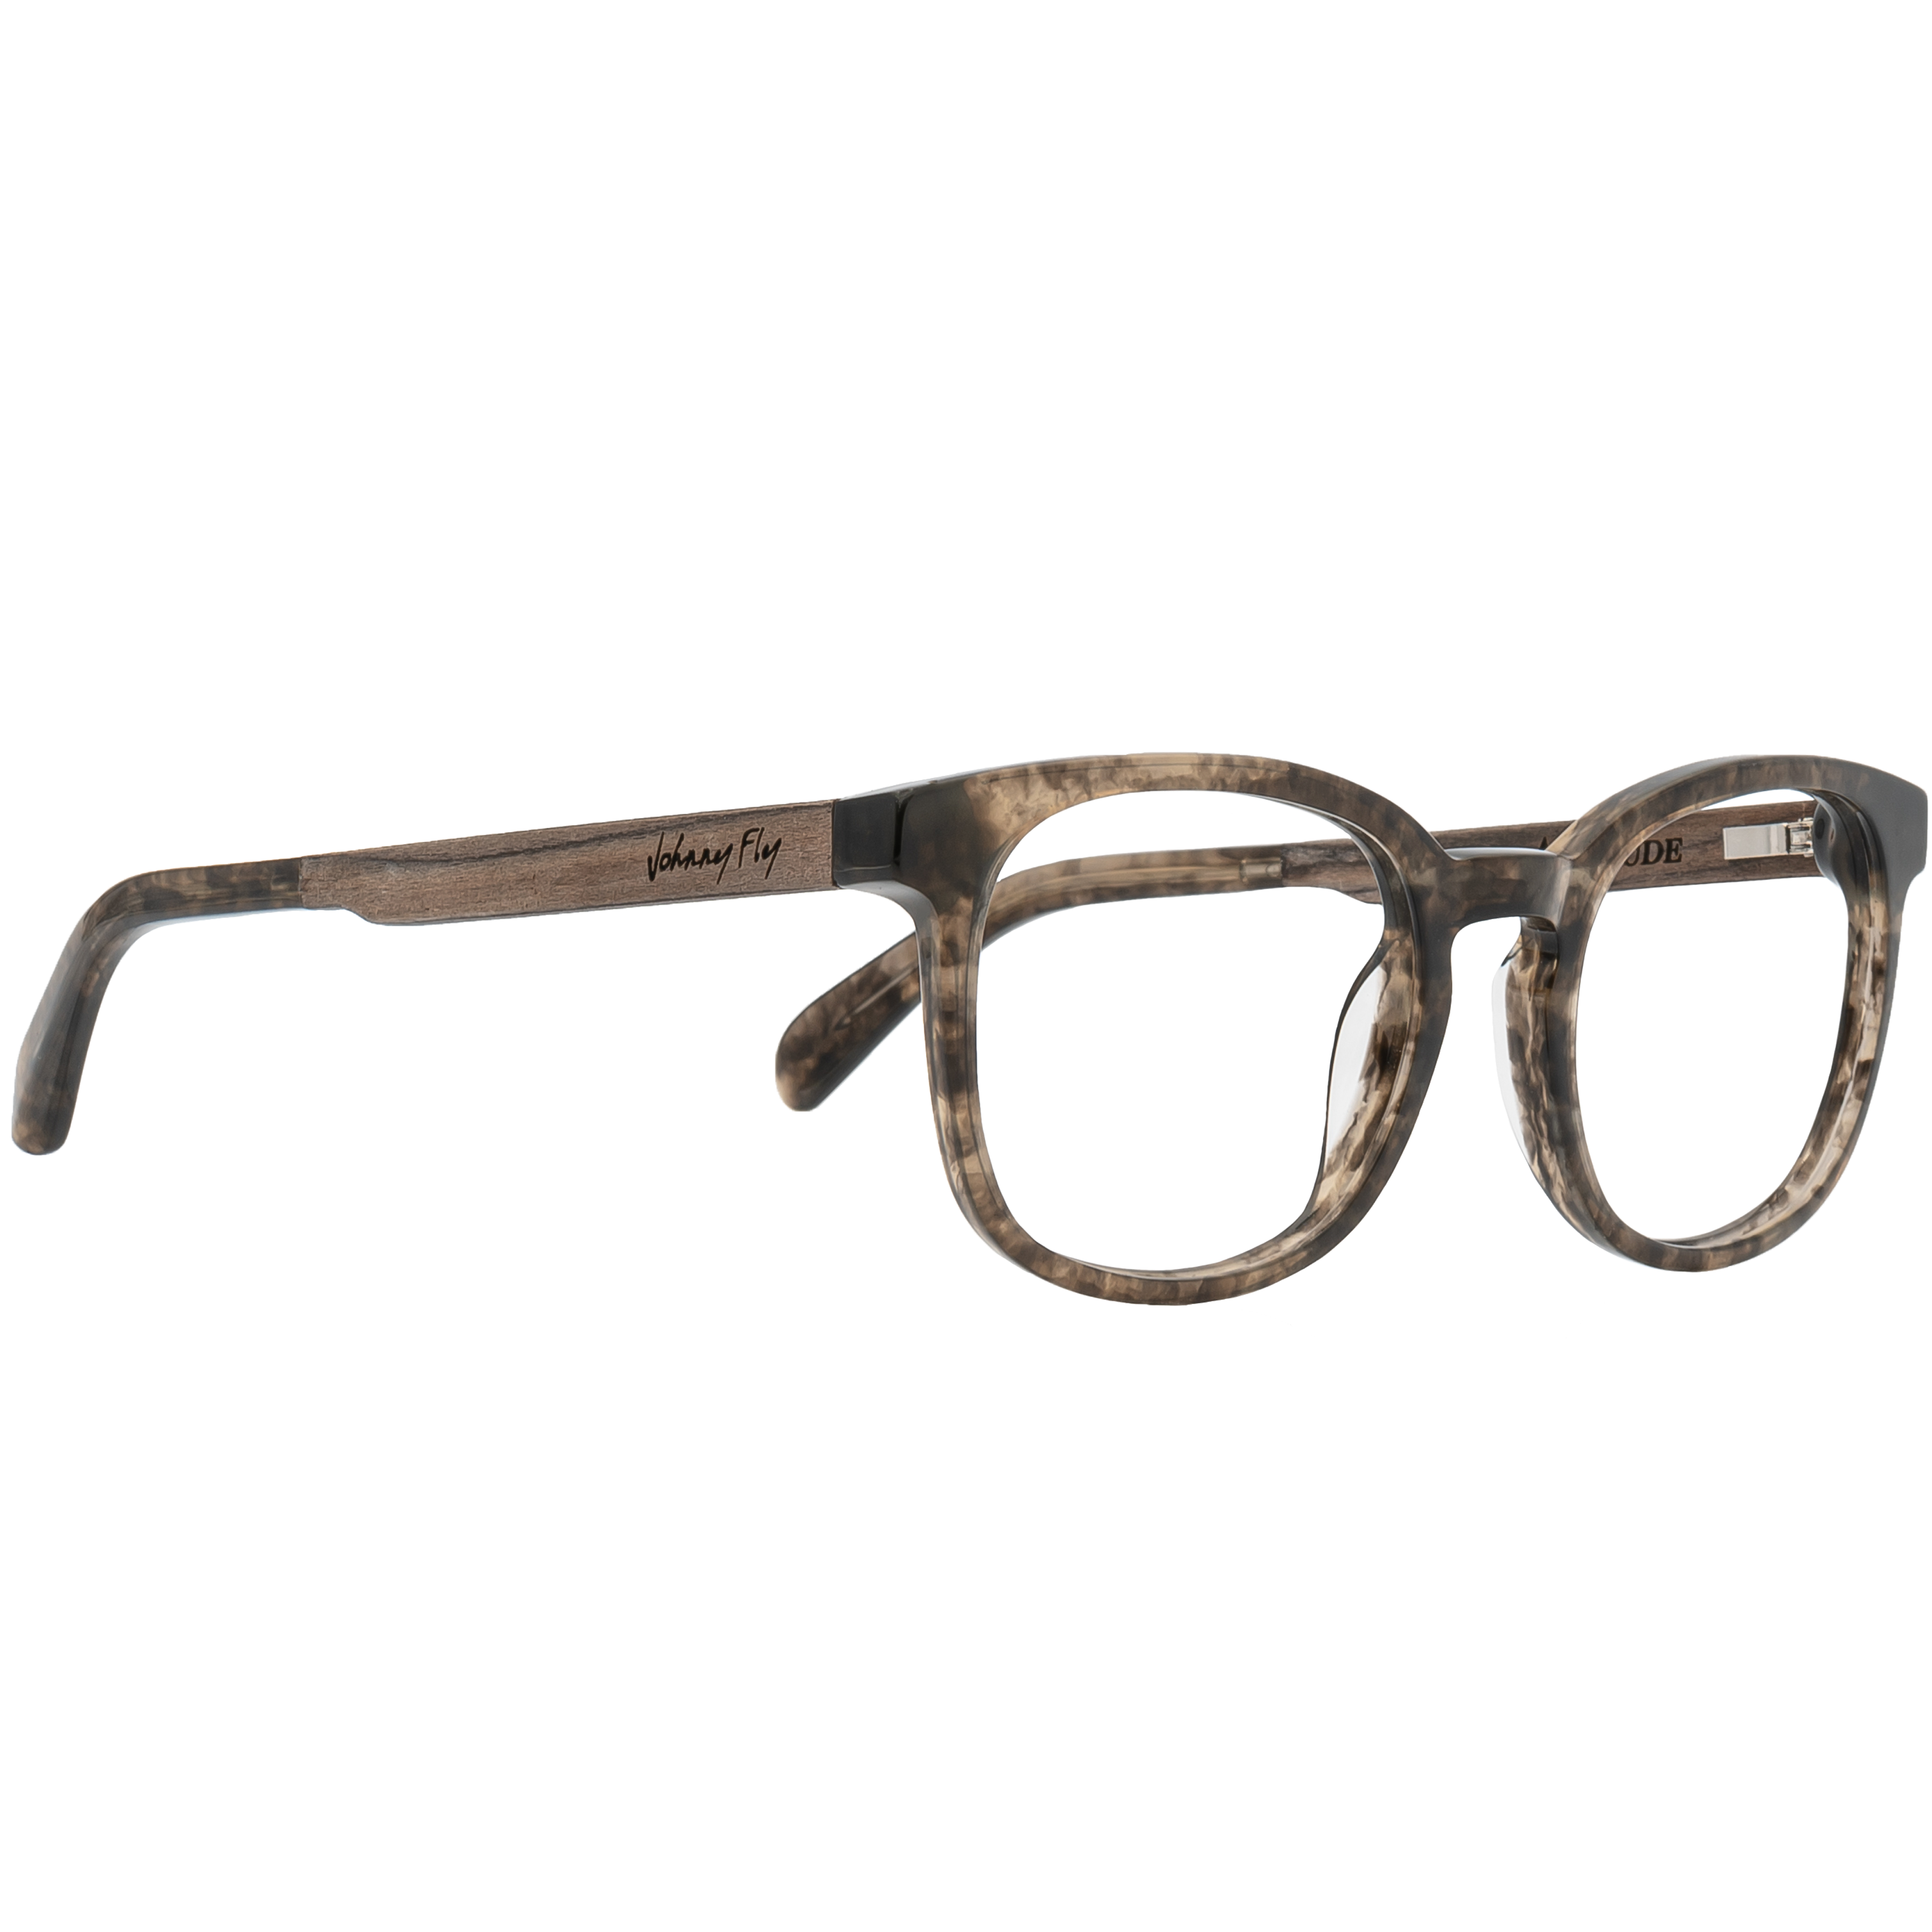 ALTITUDE Frame - Marsh - Eyeglasses Frame - Johnny Fly Eyewear #color_rose-tortoise